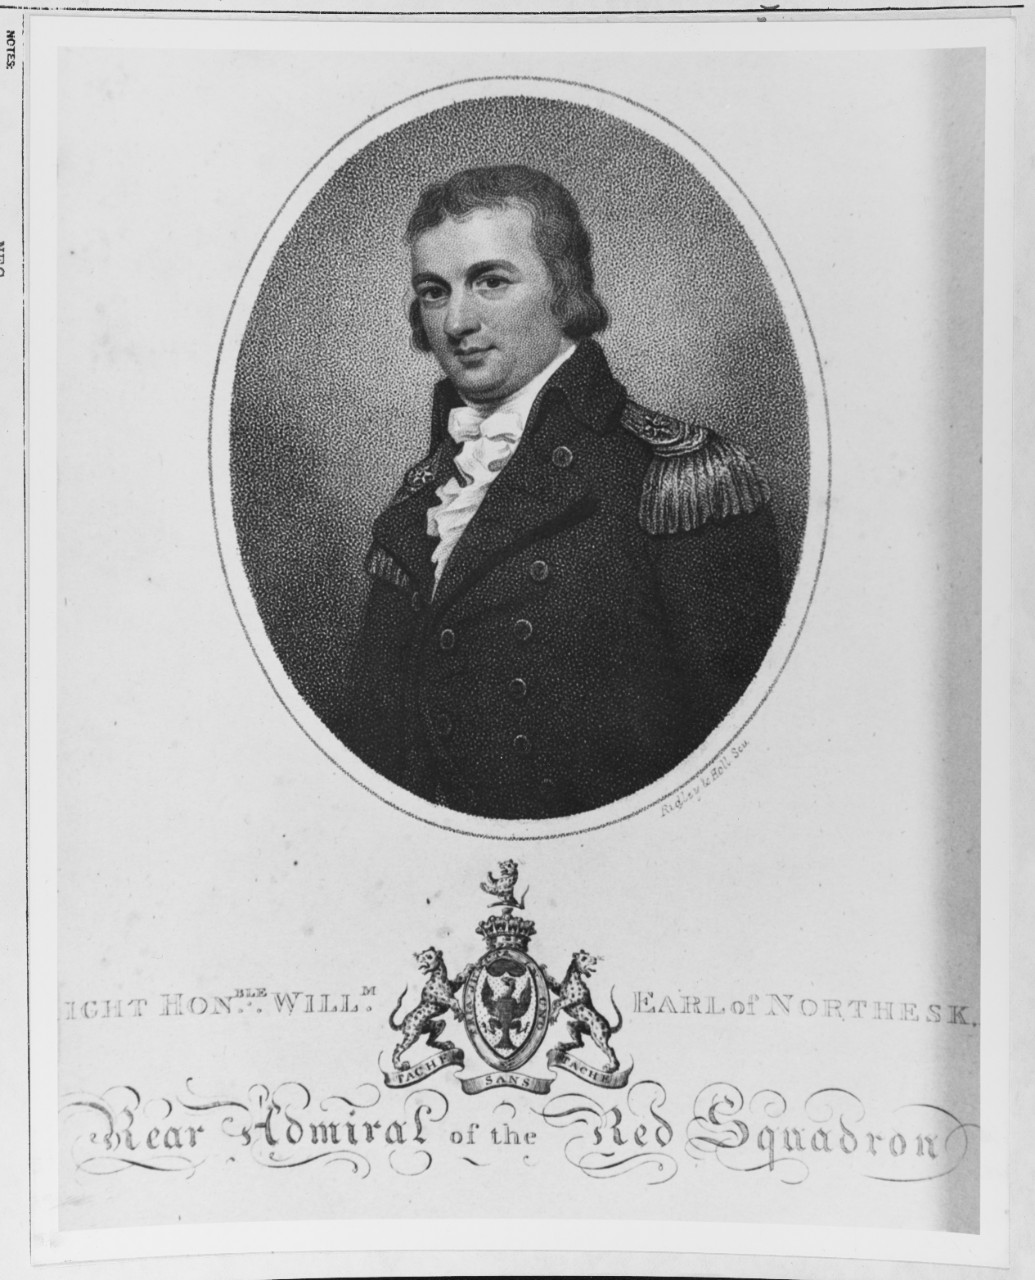 William Carnegie, Earl of Northesk        ( 1758 -1831)